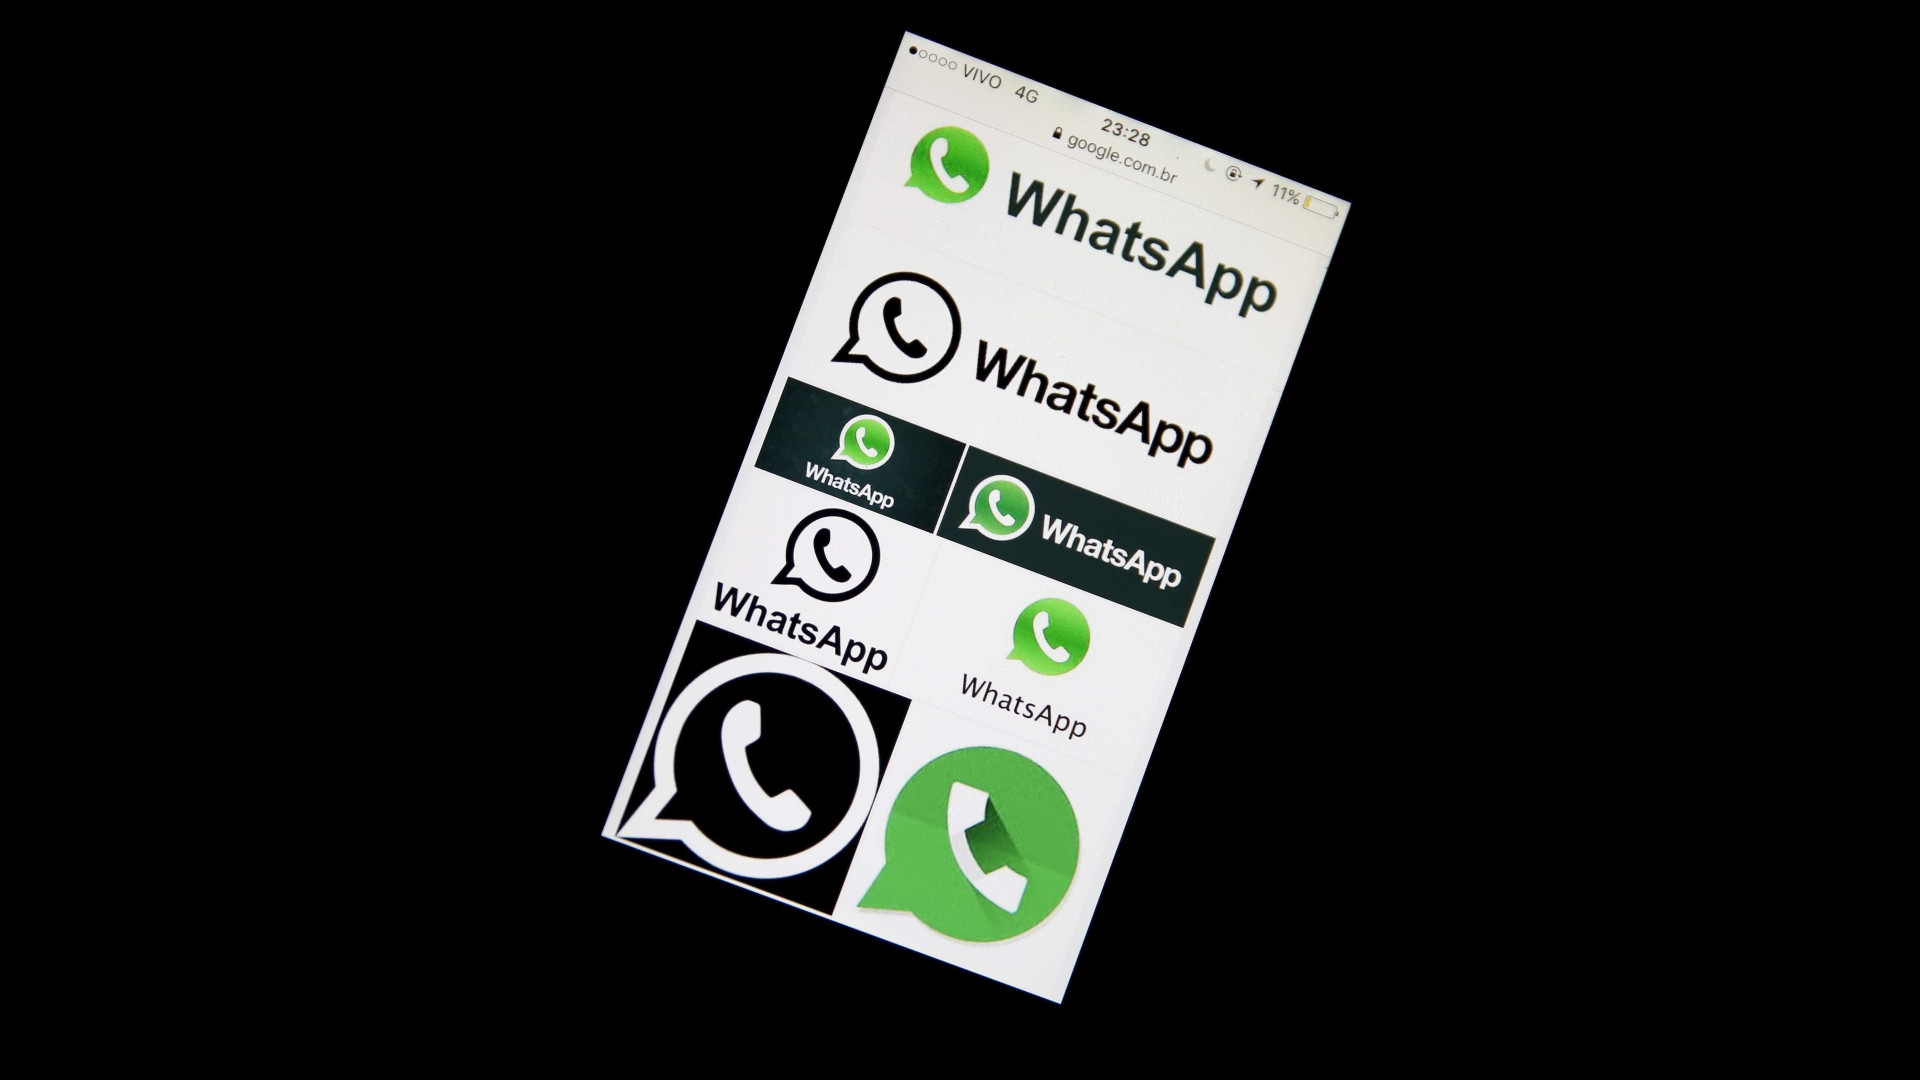 Mau uso do aplicativo não pode anular benefícios do WhatsApp, dizem usuários